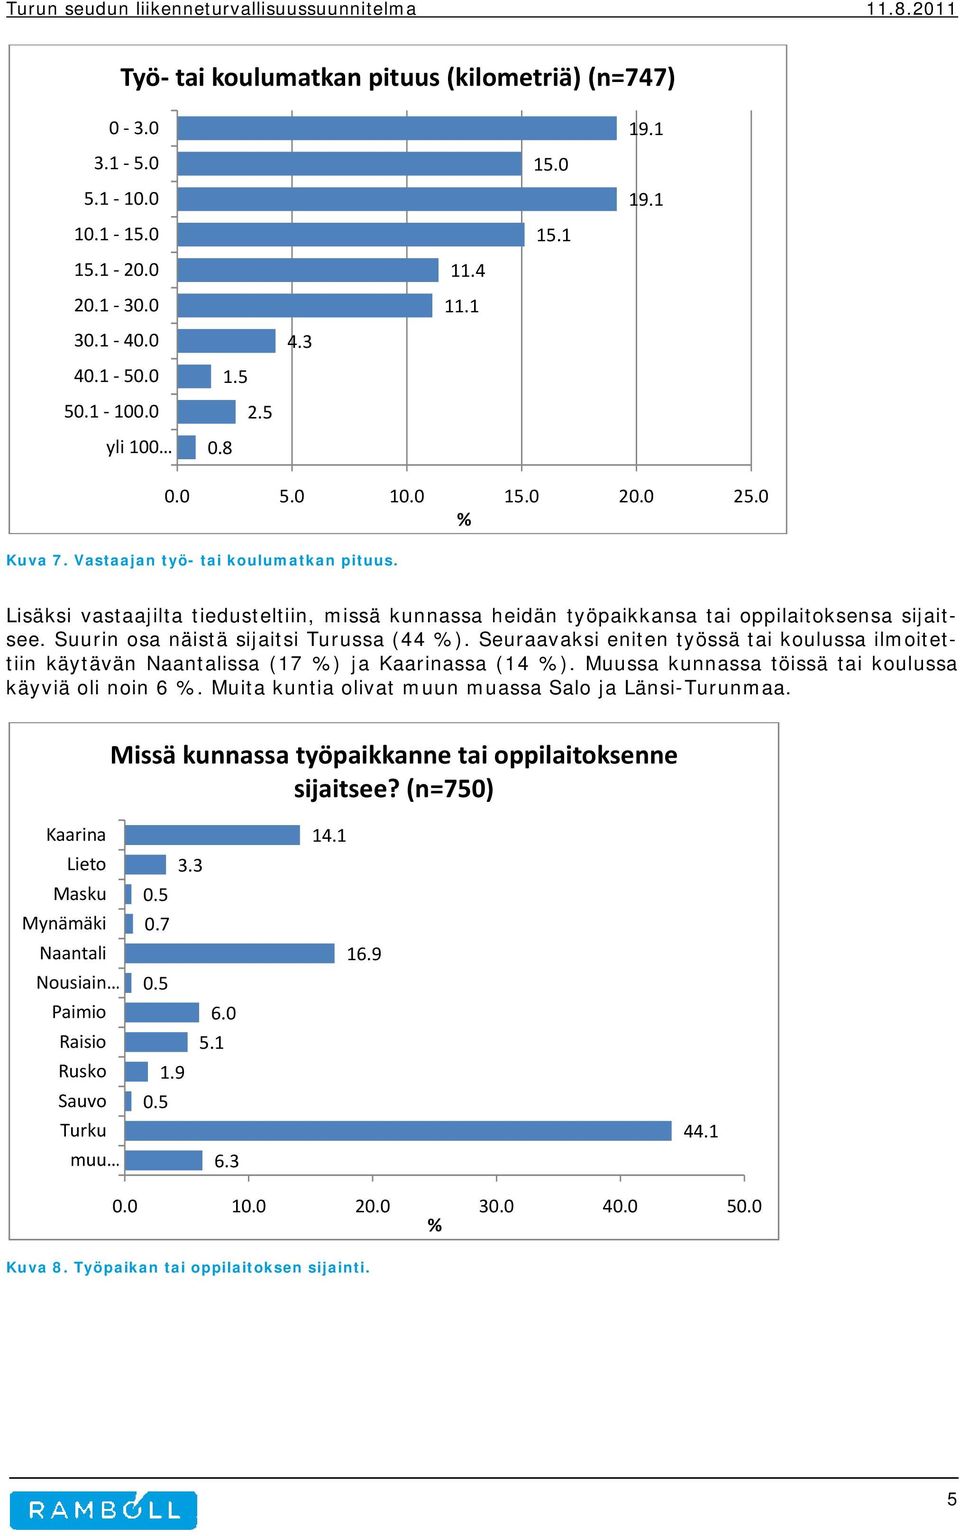 Suurin osa näistä sijaitsi Turussa (44 ). Seuraavaksi eniten työssä tai koulussa ilmoitettiin käytävän Naantalissa (17 ) ja Kaarinassa (14 ). Muussa kunnassa töissä tai koulussa käyviä oli noin 6.